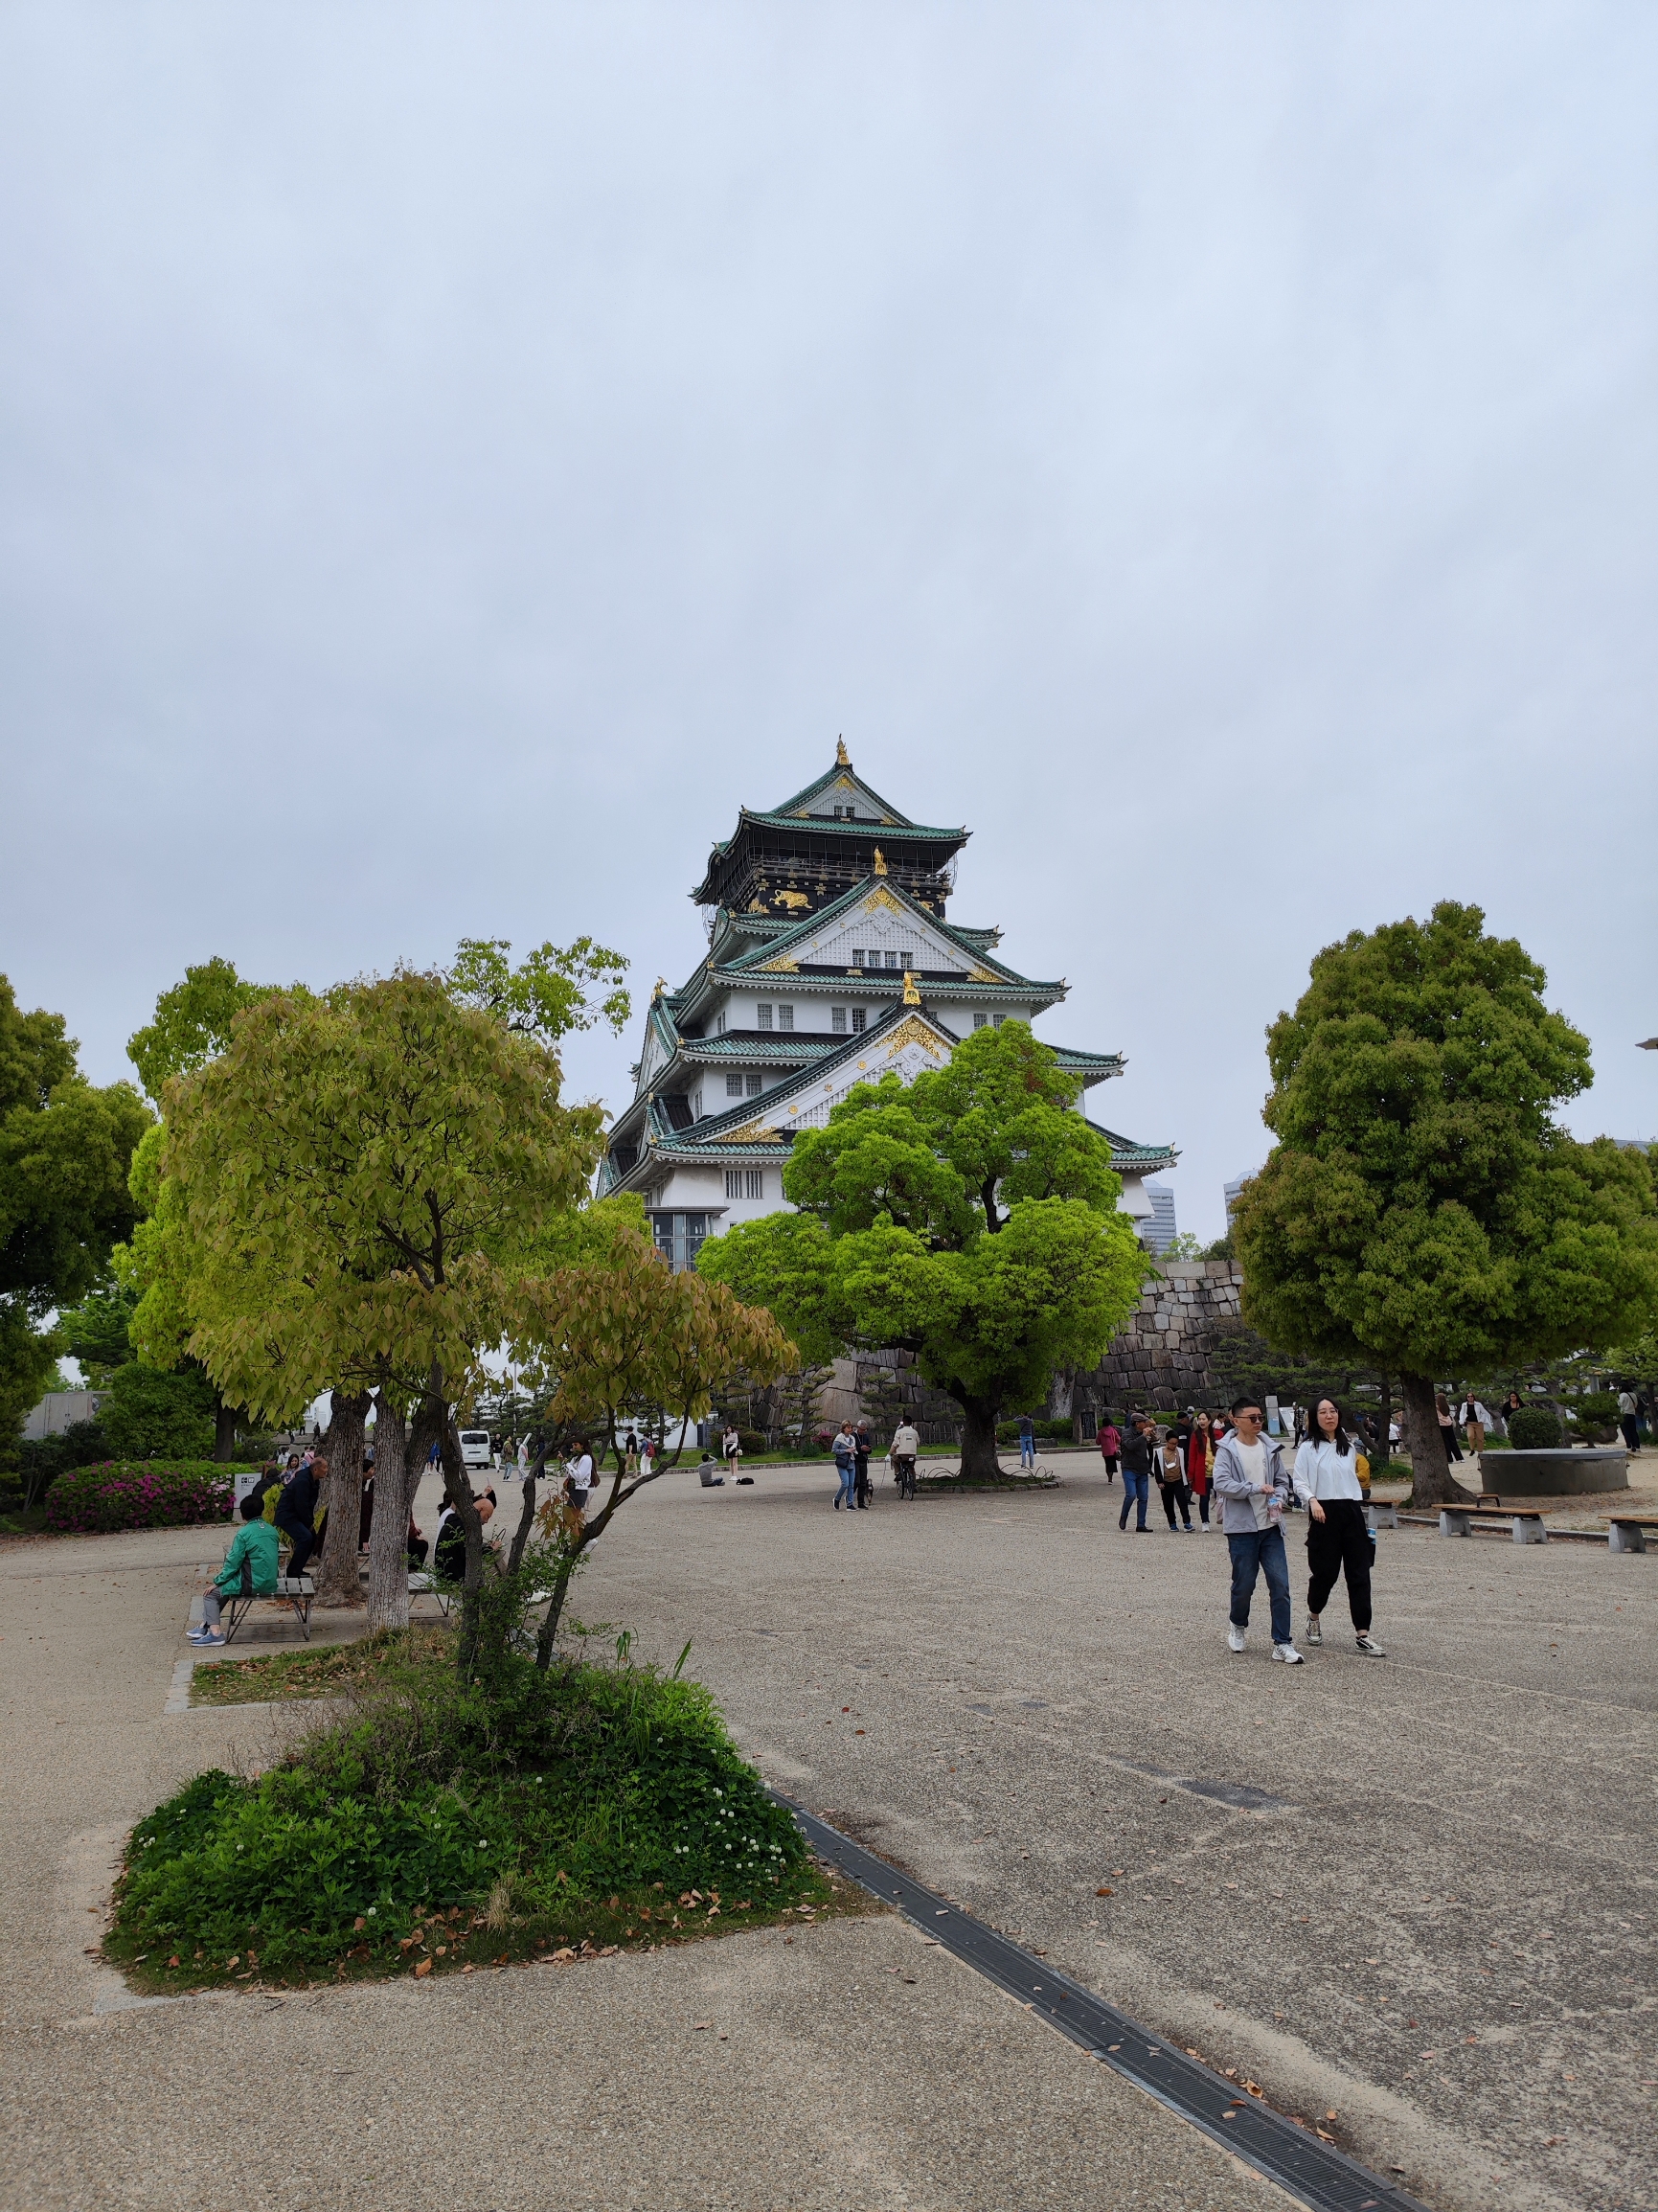 大阪城是日本的三大城堡之一，距今已有四百多年历史。是日本当时最大的城堡。春光绚烂之时，大阪城天守阁与